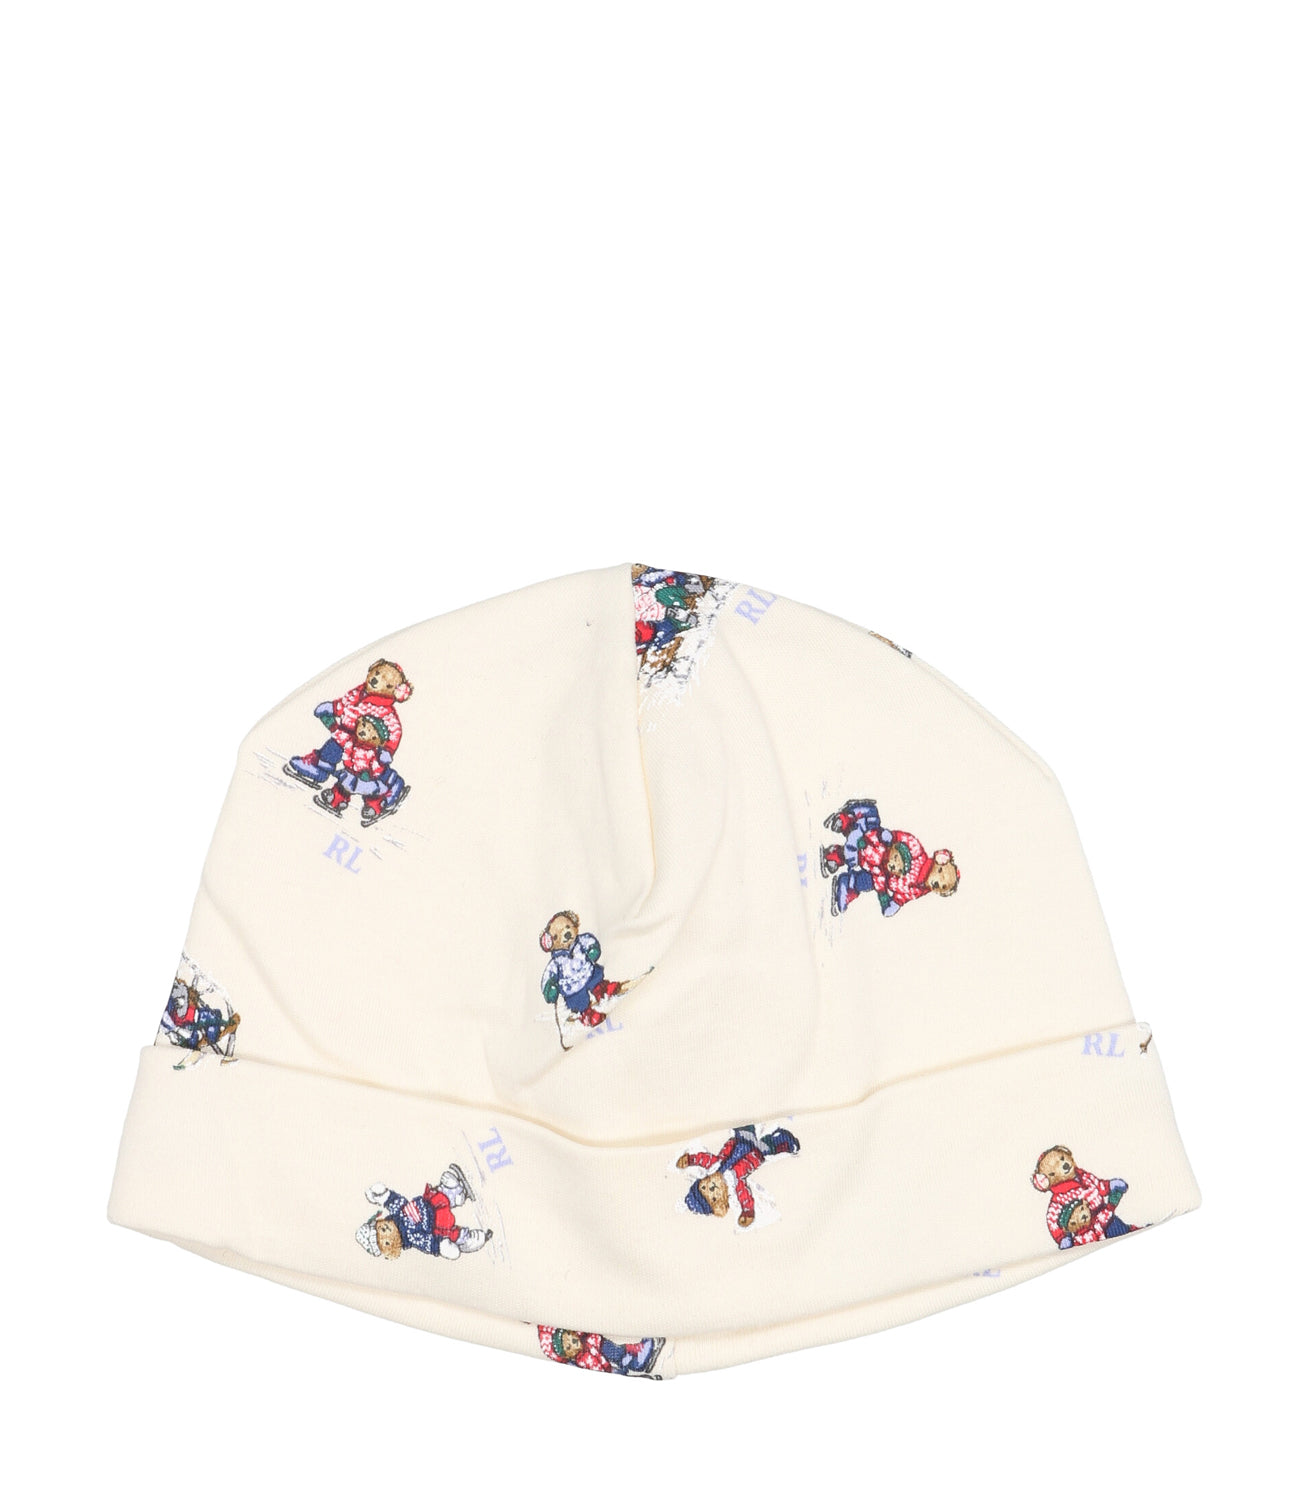 Ralph Lauren Childrenswear | cream hat